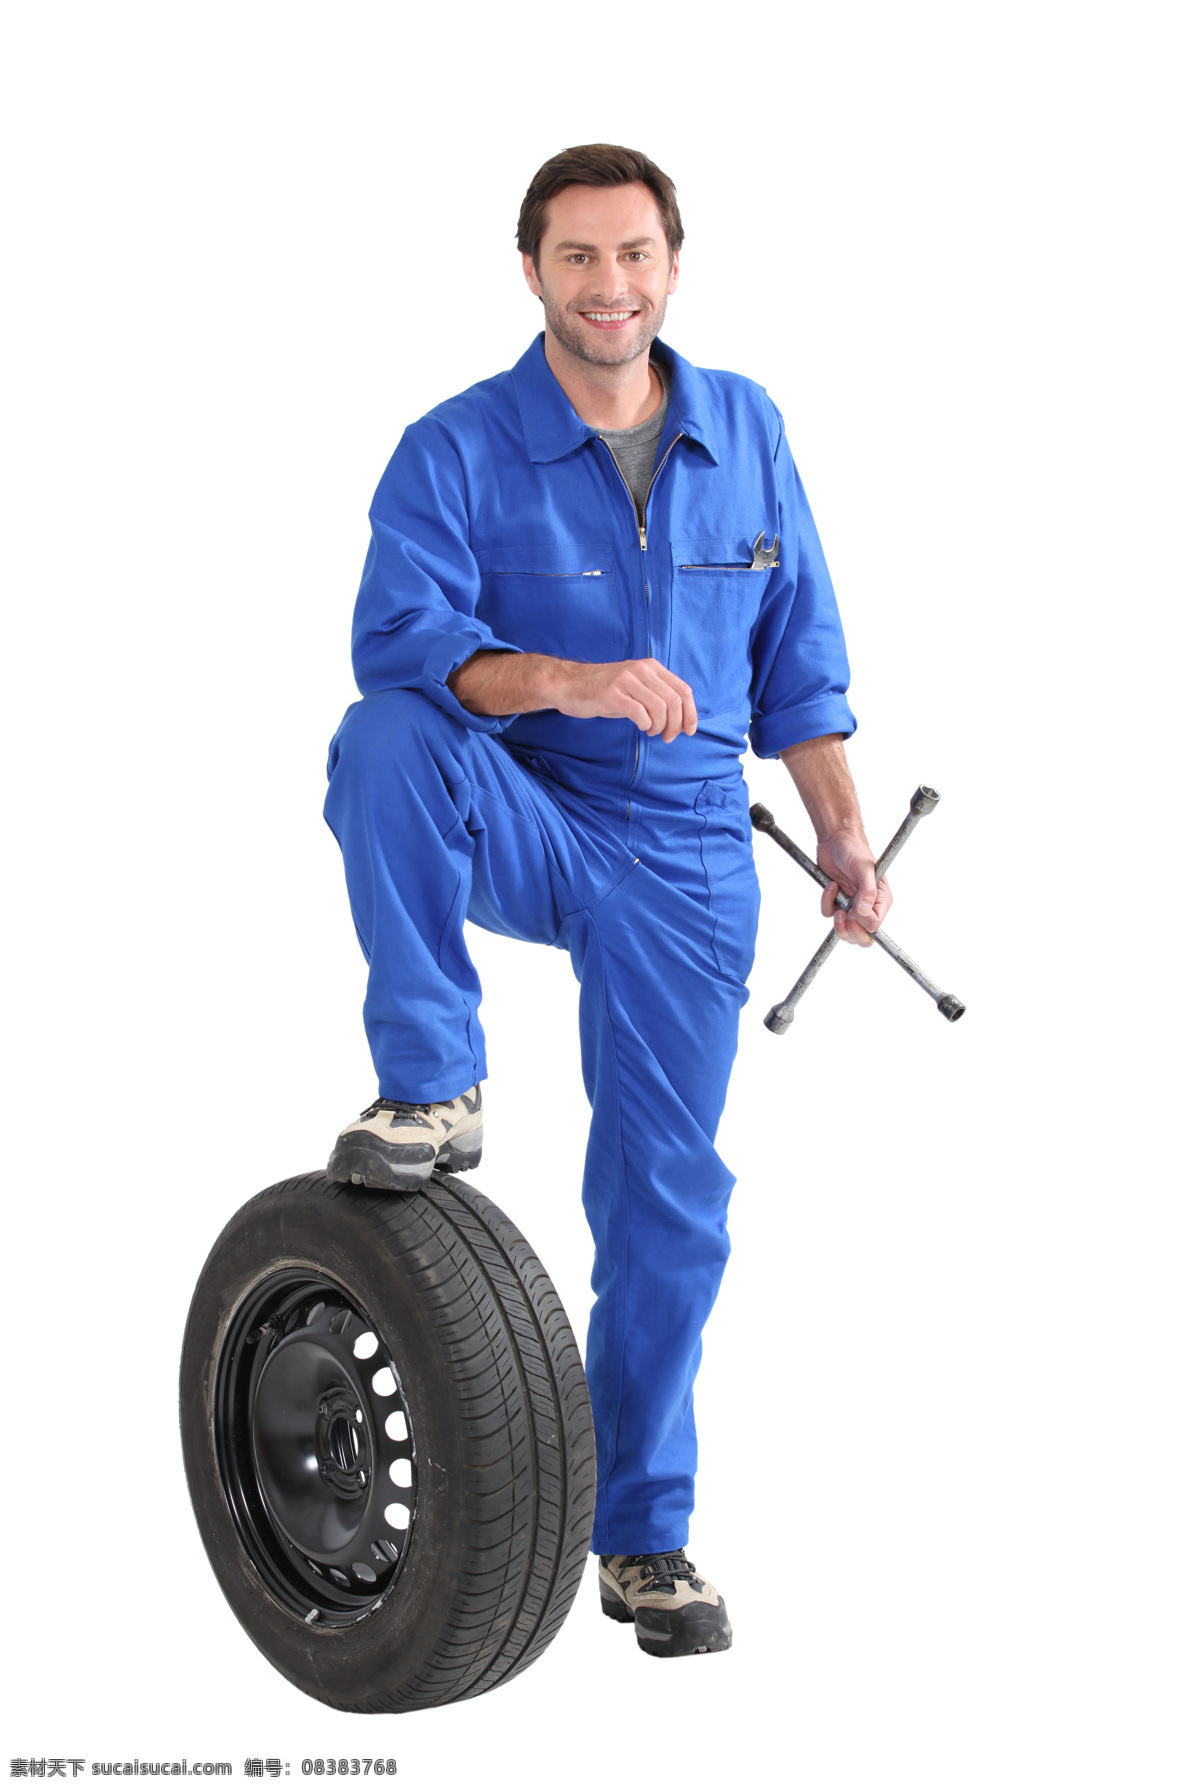 汽车维修 工人 轮胎 维修工人 运输 货车 轮胎摄影 轮胎特写 车轮子 汽车零件 配件 交通工具 现代科技 汽车图片